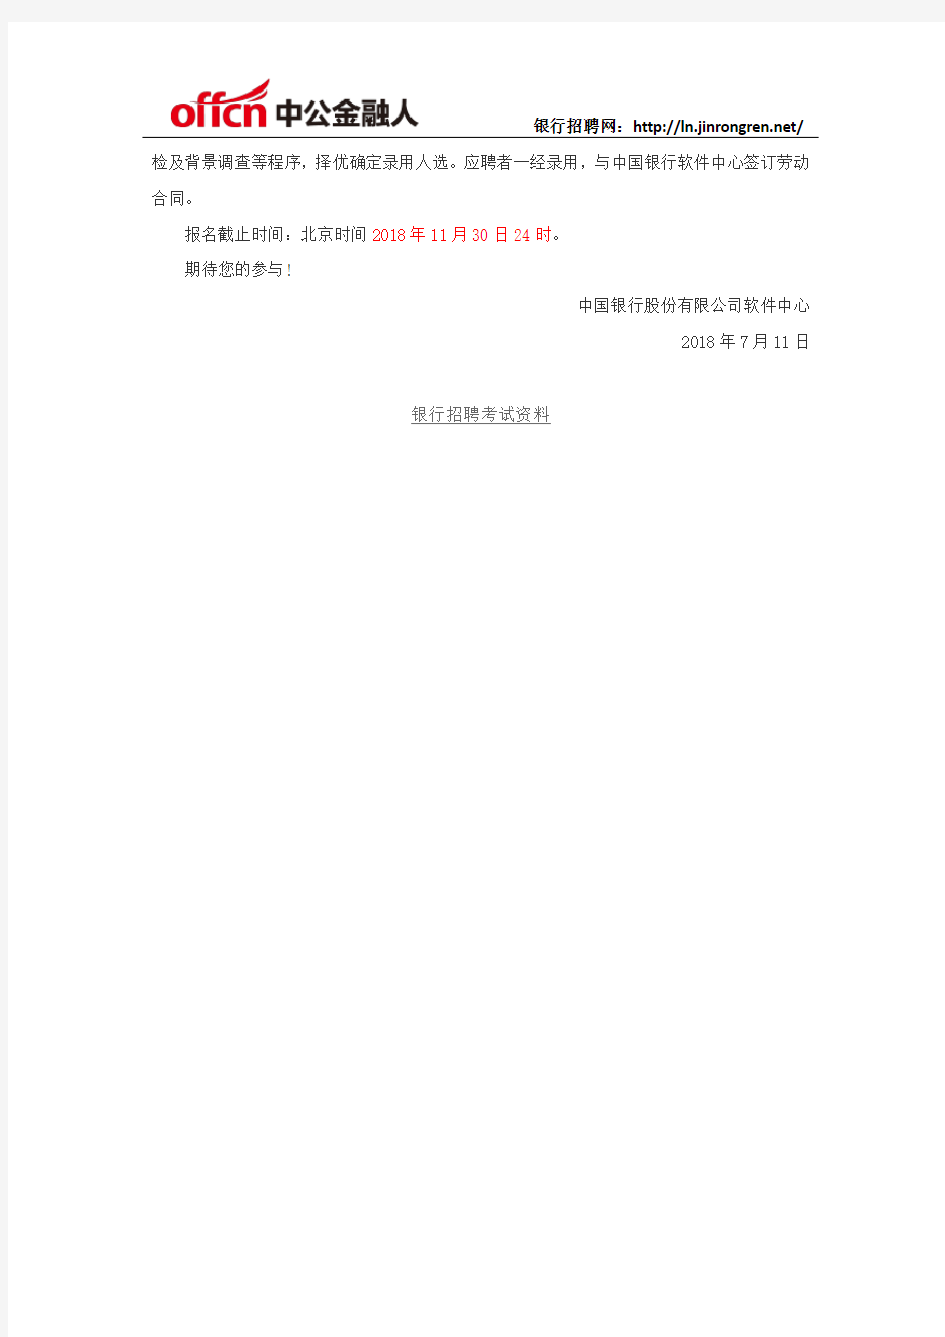 2018中国银行软件中心社会招聘公告